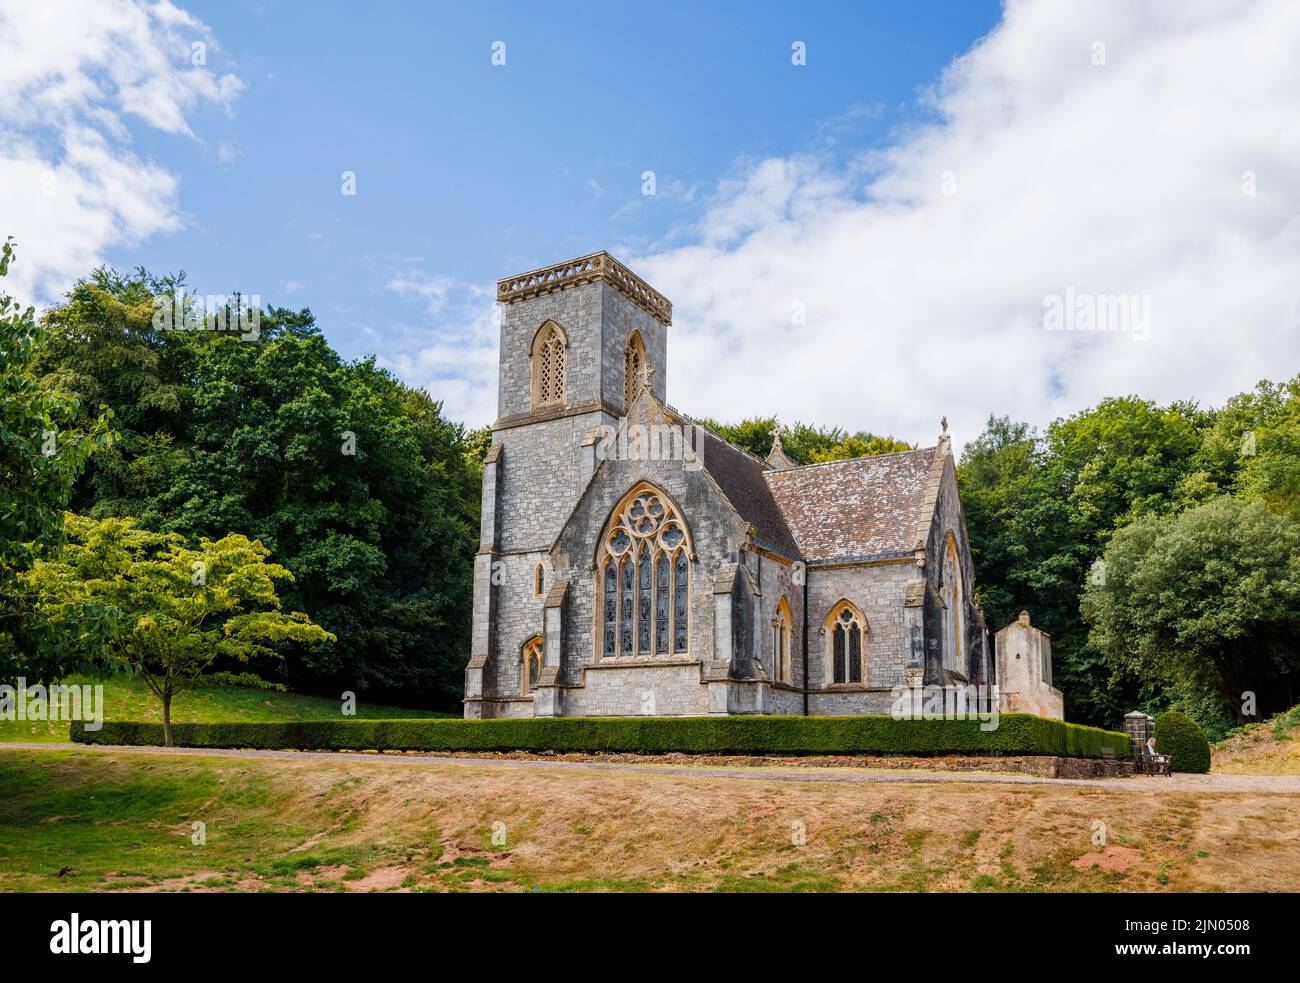 Iglesia de St Mary en los Jardines Botánicos del Parque Bicton cerca de East Budleigh en East Devon, al suroeste de Inglaterra Foto de stock